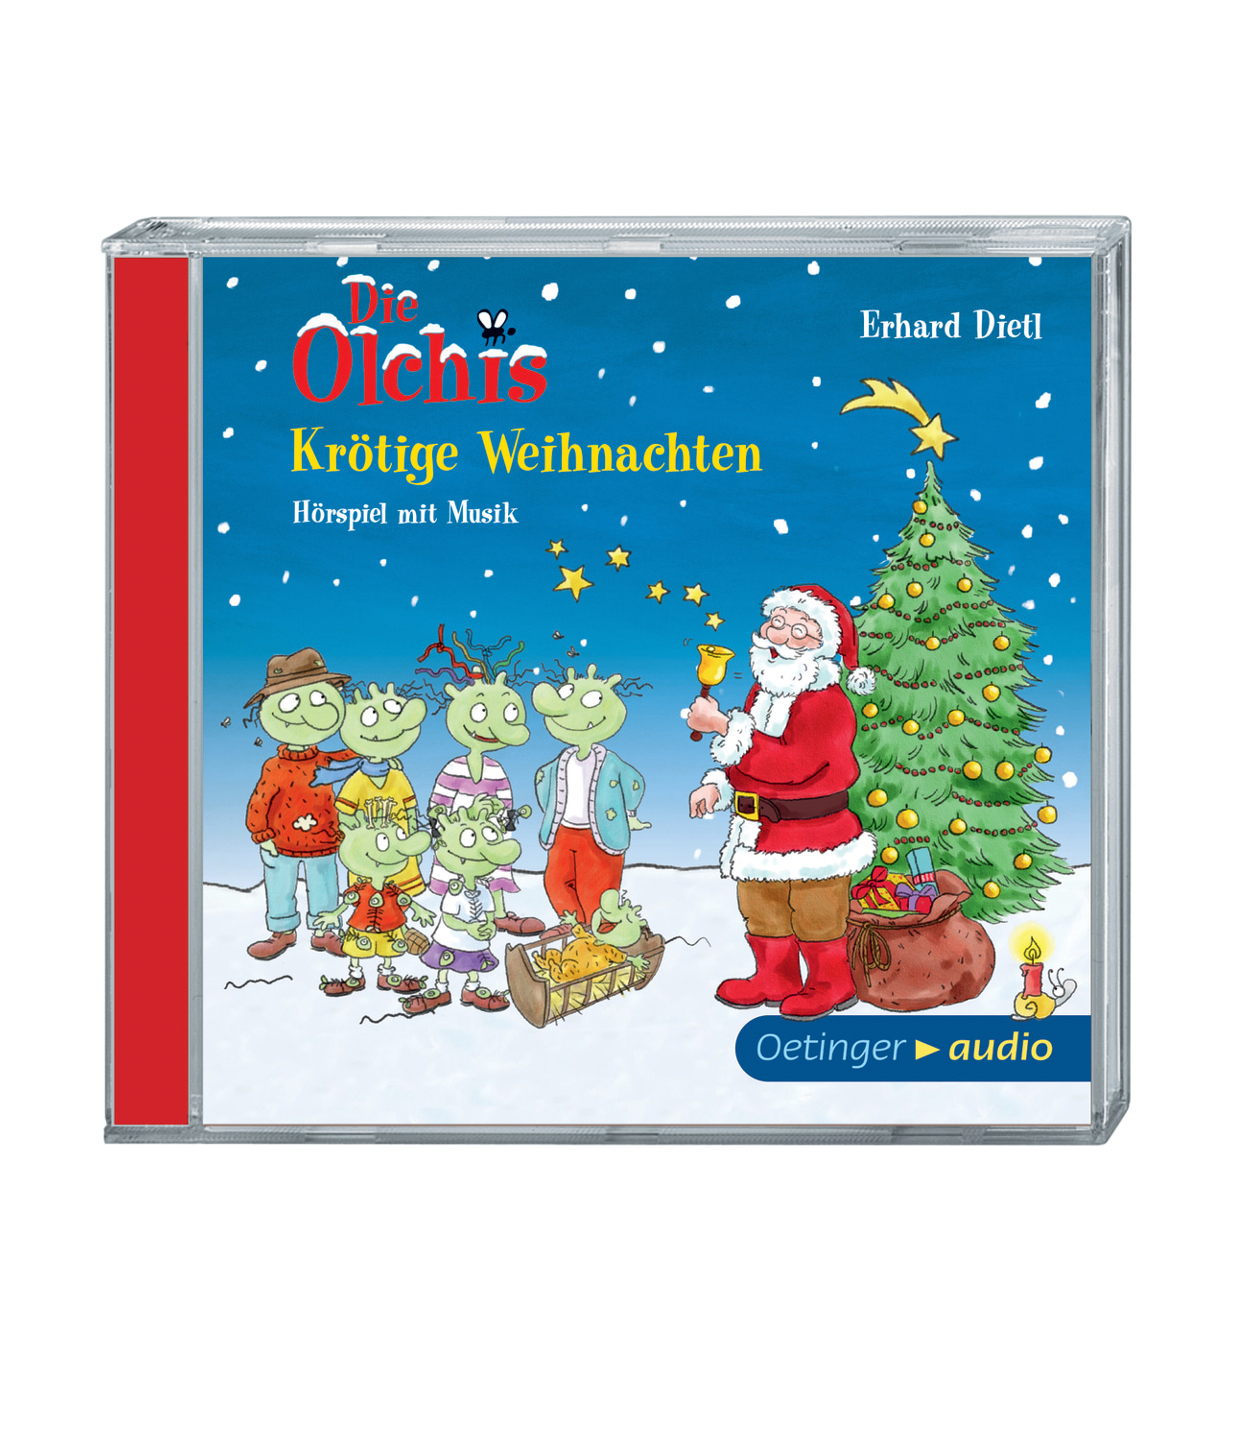 Oetinger Verlag Audio - Die Olchis Krötige Weihnachten CD